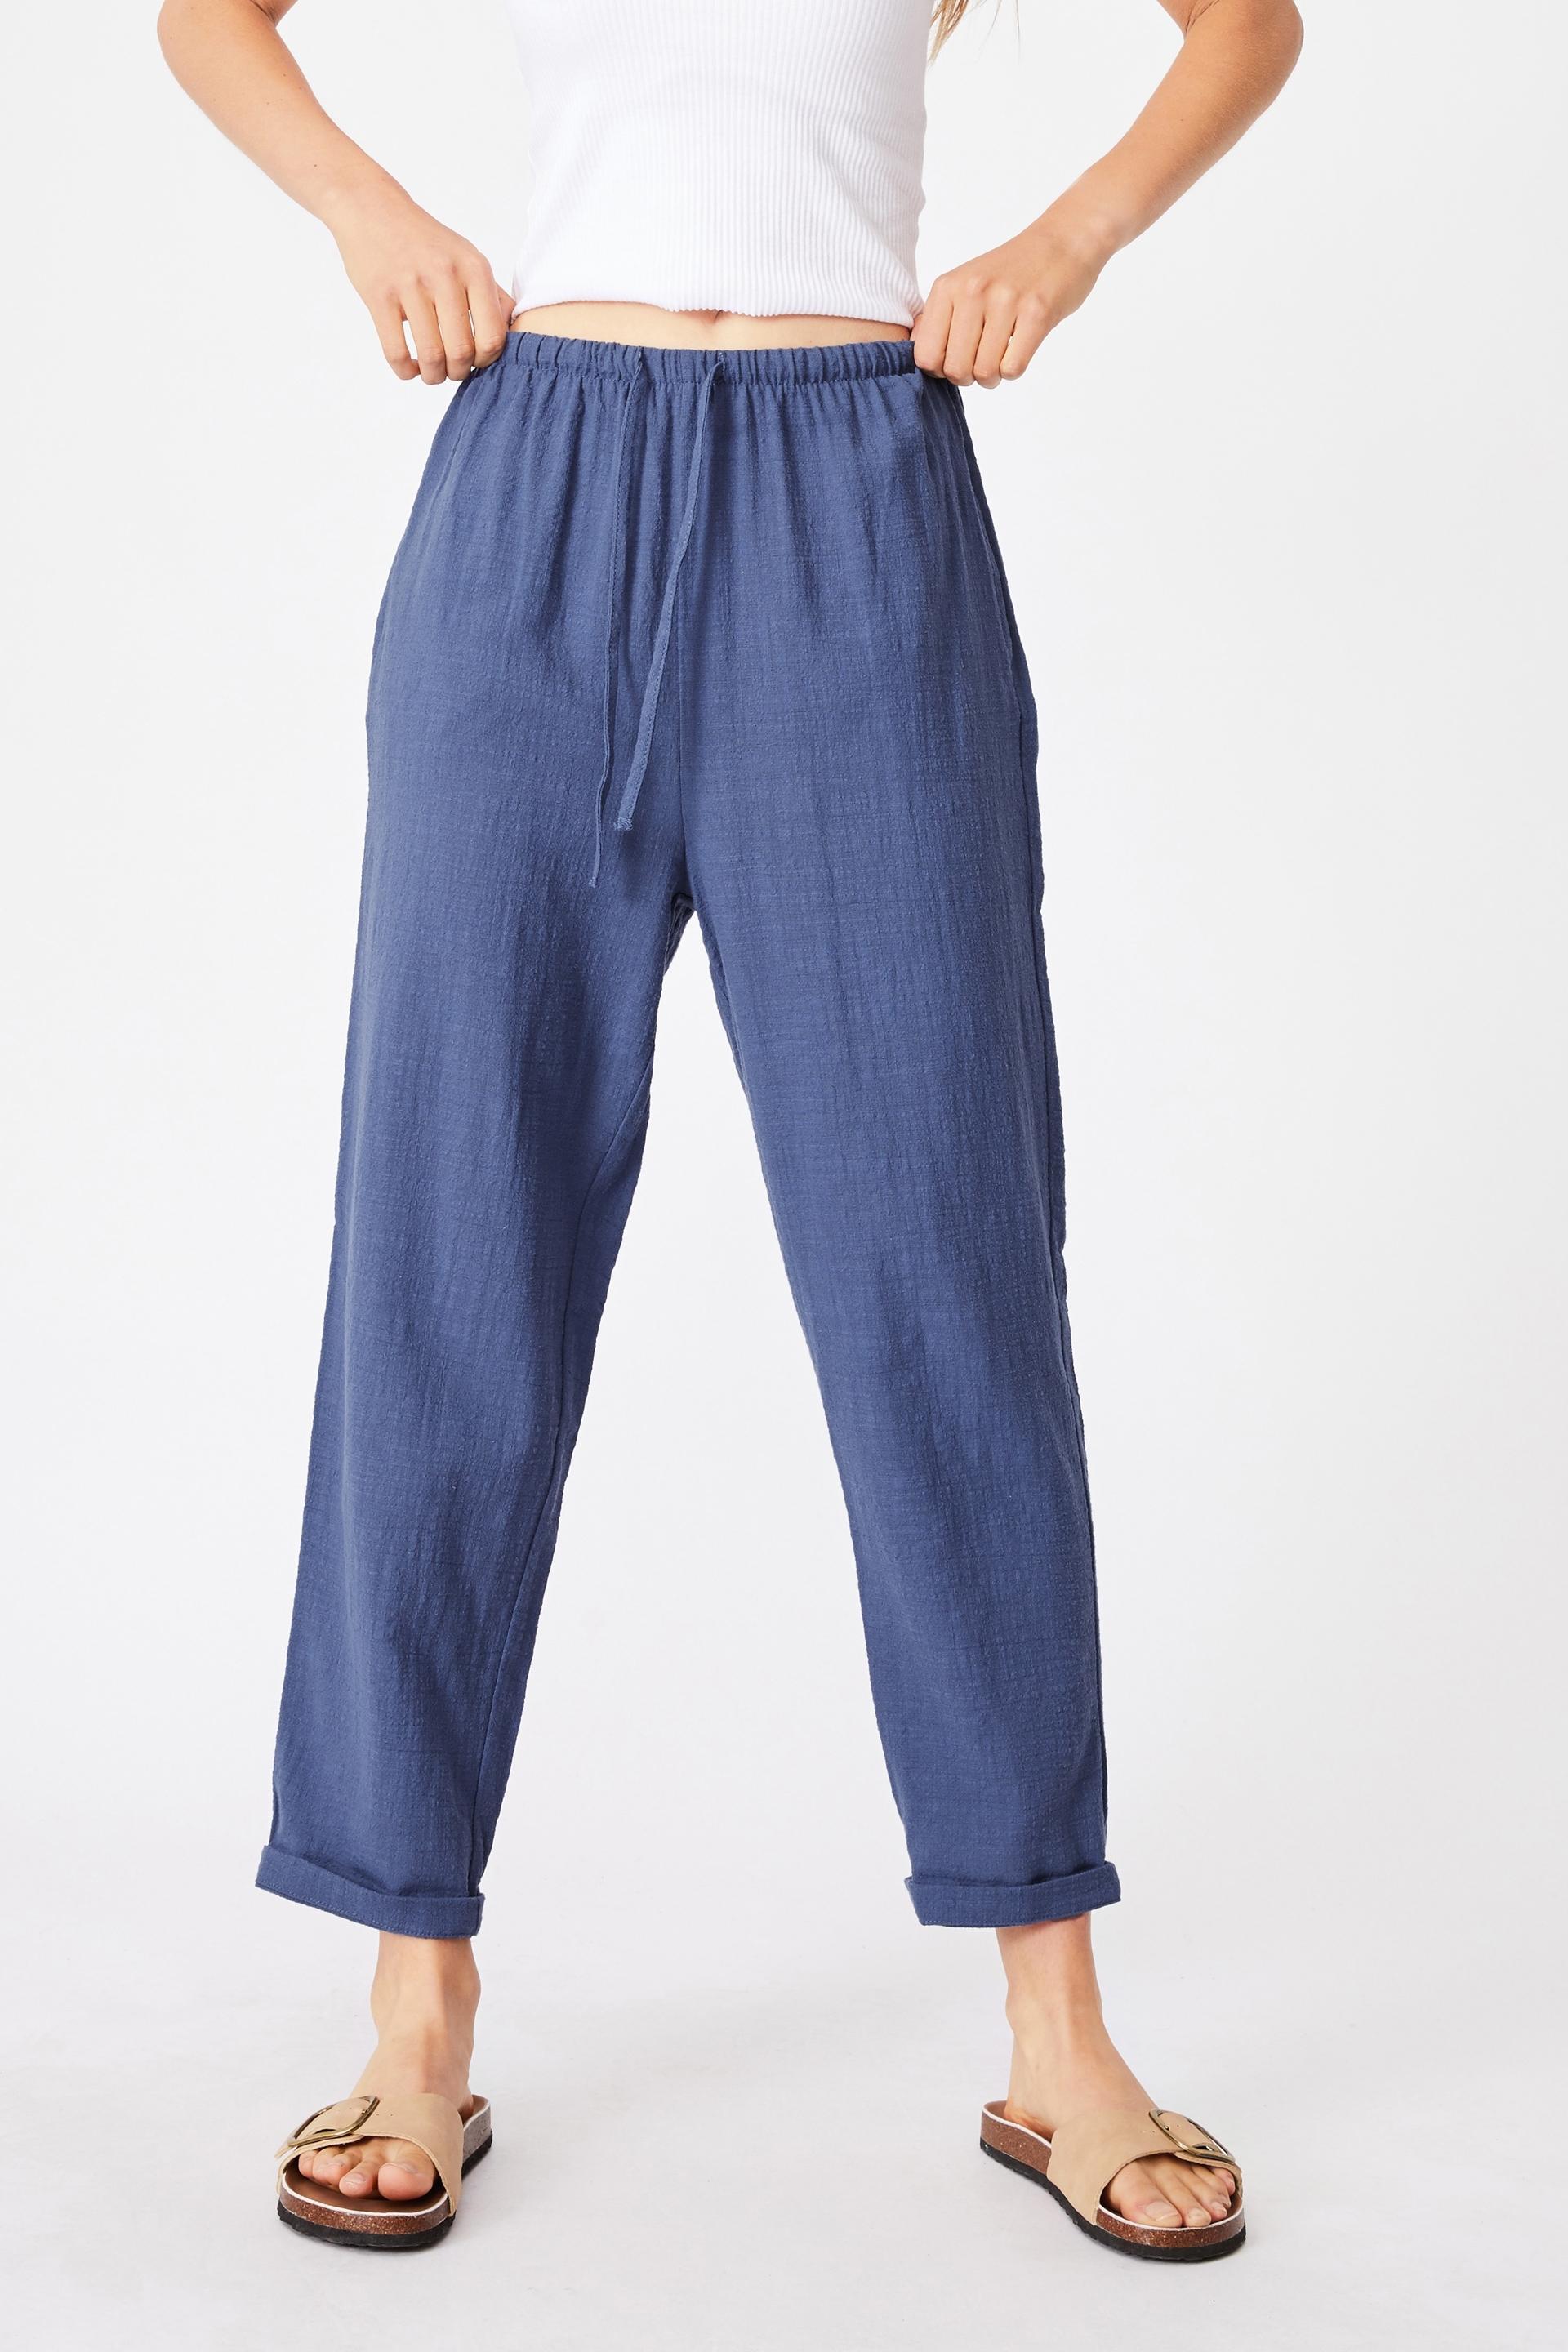 Cali pull on pants - coastal blue Cotton On Trousers | Superbalist.com